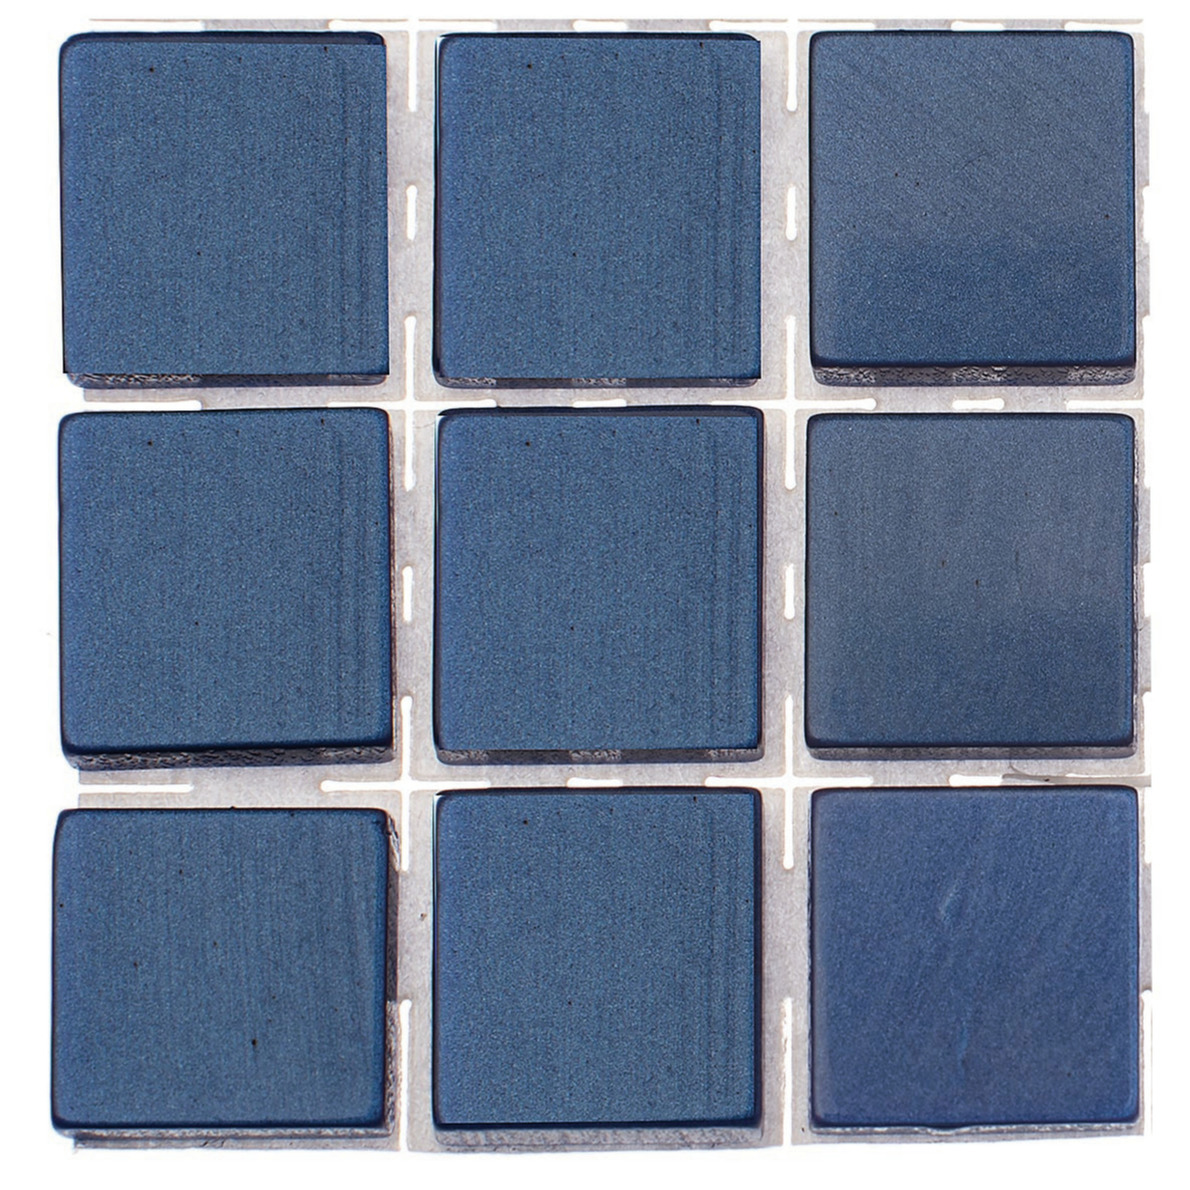 63x stuks mozaieken maken steentjes-tegels kleur donkerblauw 0.1 x 0.1 x 0.2 cm